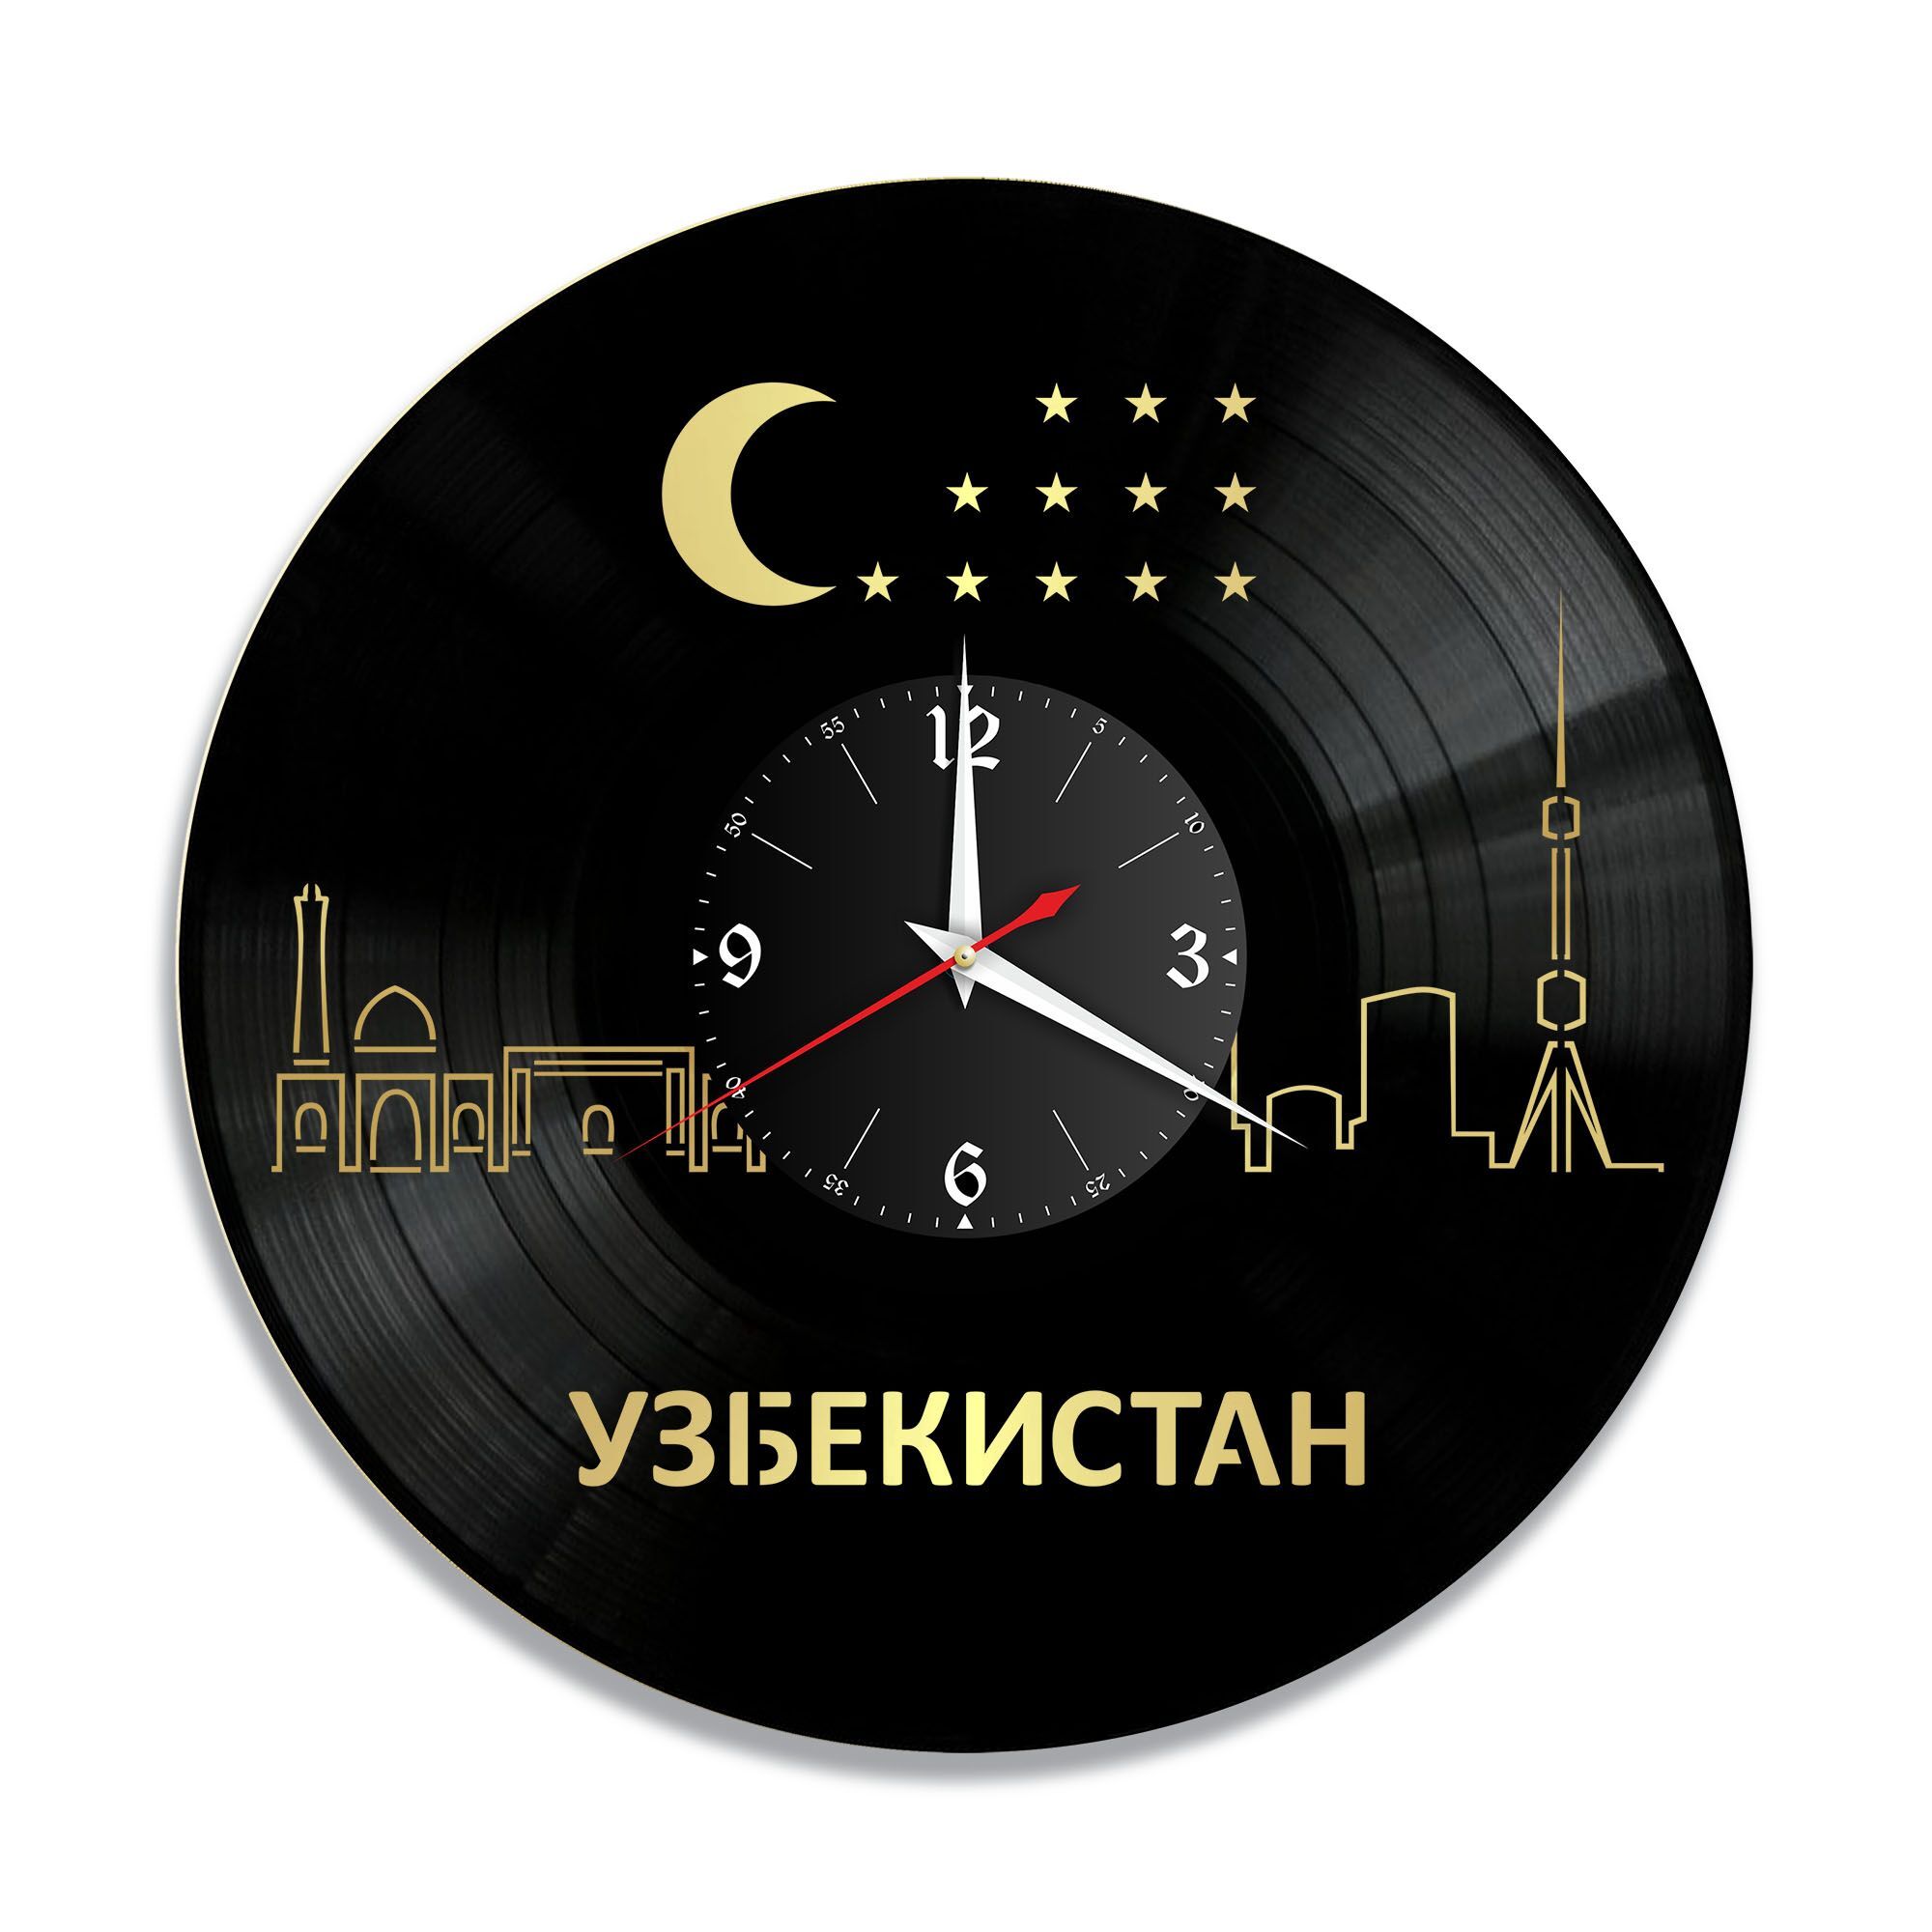 Время час узбекистан. Часы Uzbekistan. Сувенир часы Узбекистан. Час Узбекистан. Картинка 1:00 ночи в Узбекистане часы.